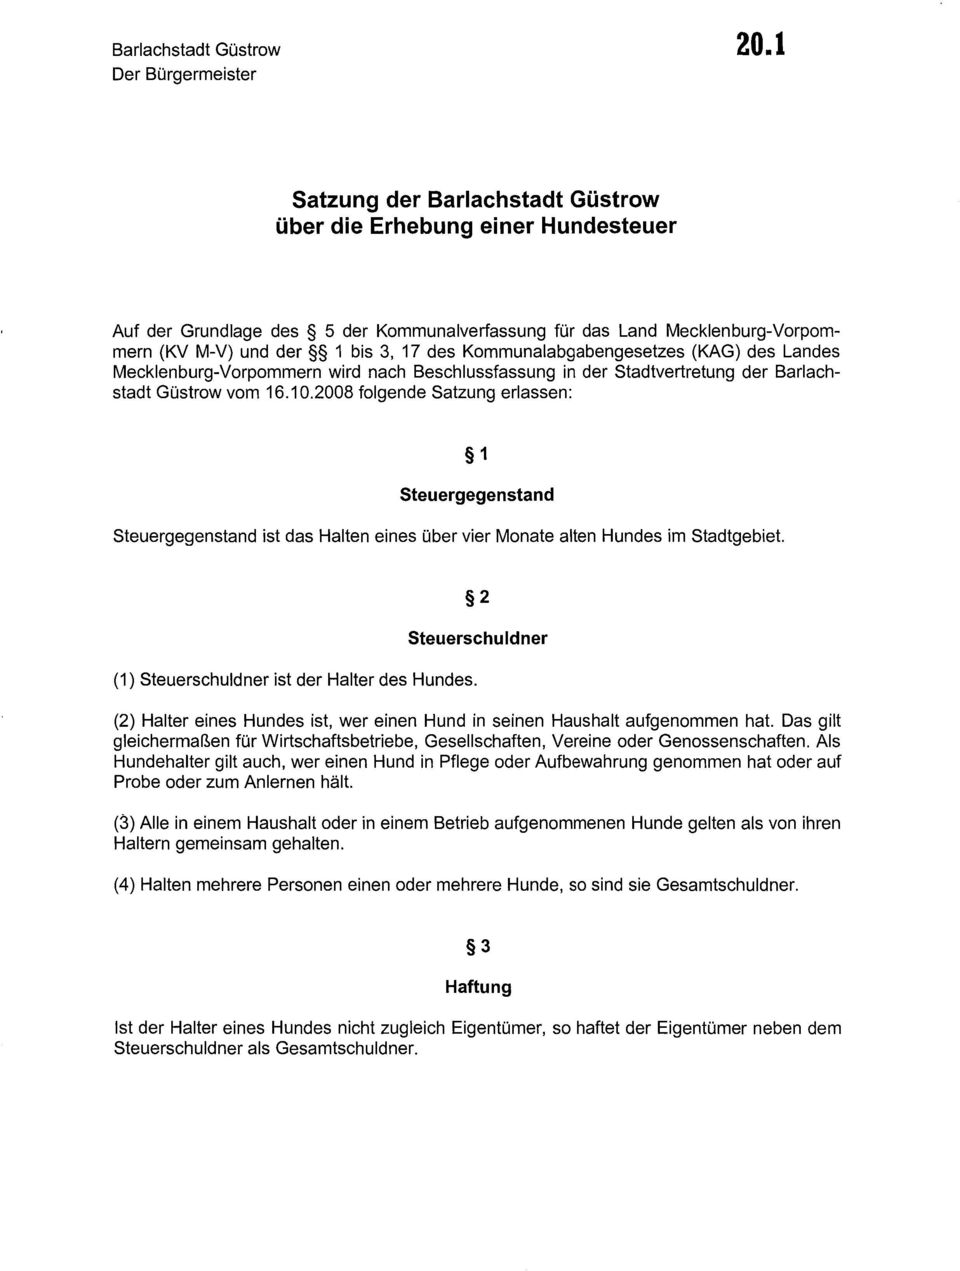 17 des Kommunalabgabengesetzes (KAG) des Landes Mecklenburg-Vorpommern wird nach Beschlussfassung in der Stadtvertretung der Barlachstadt Güstrow vom 16.10.